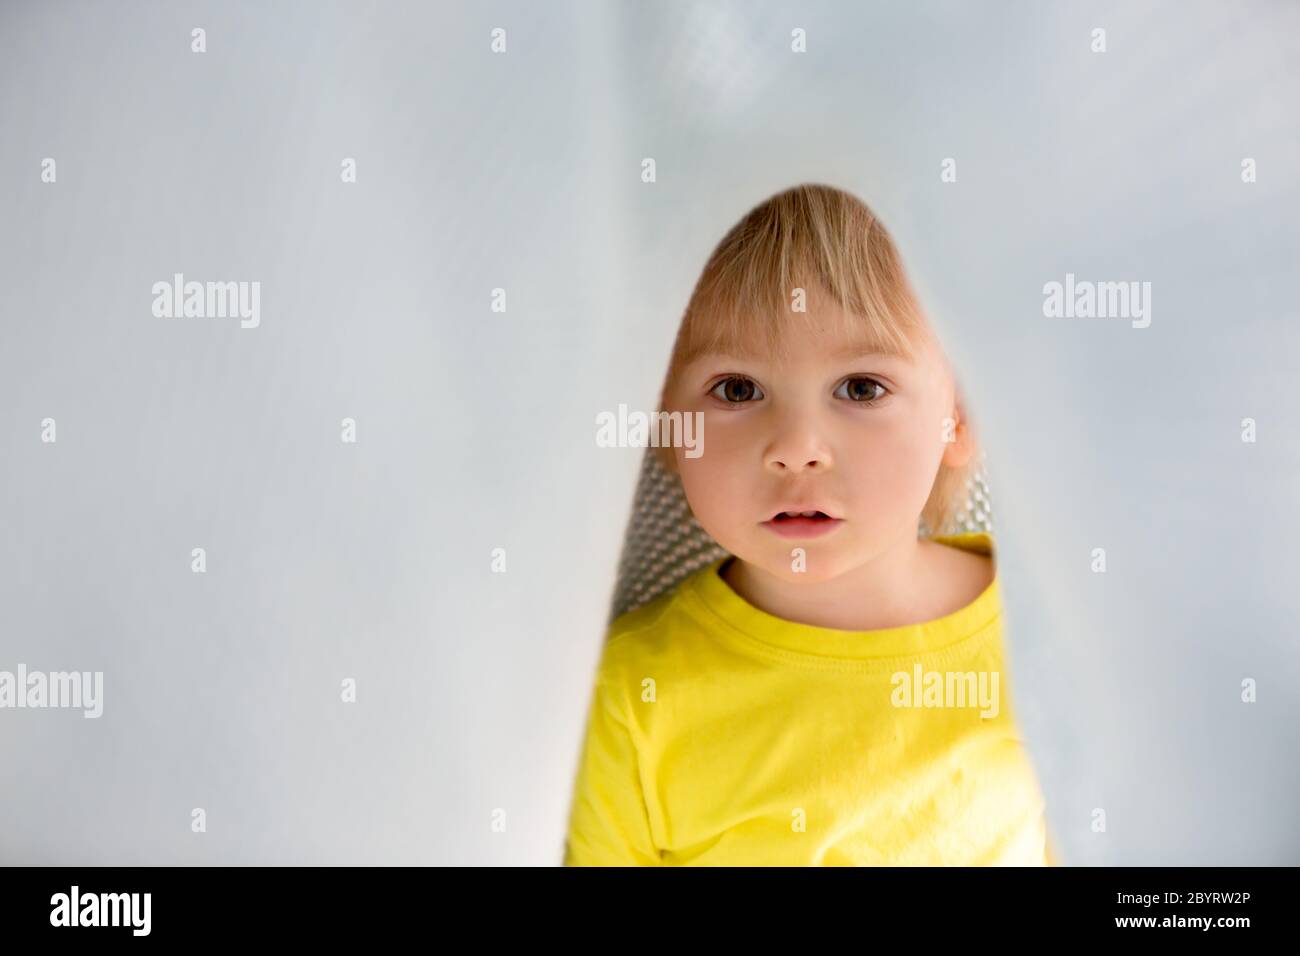 Kleiner kleiner kleiner kleiner Junge mit gelbem Hemd, versteckt unter Decke, lächelnd glücklich Stockfoto